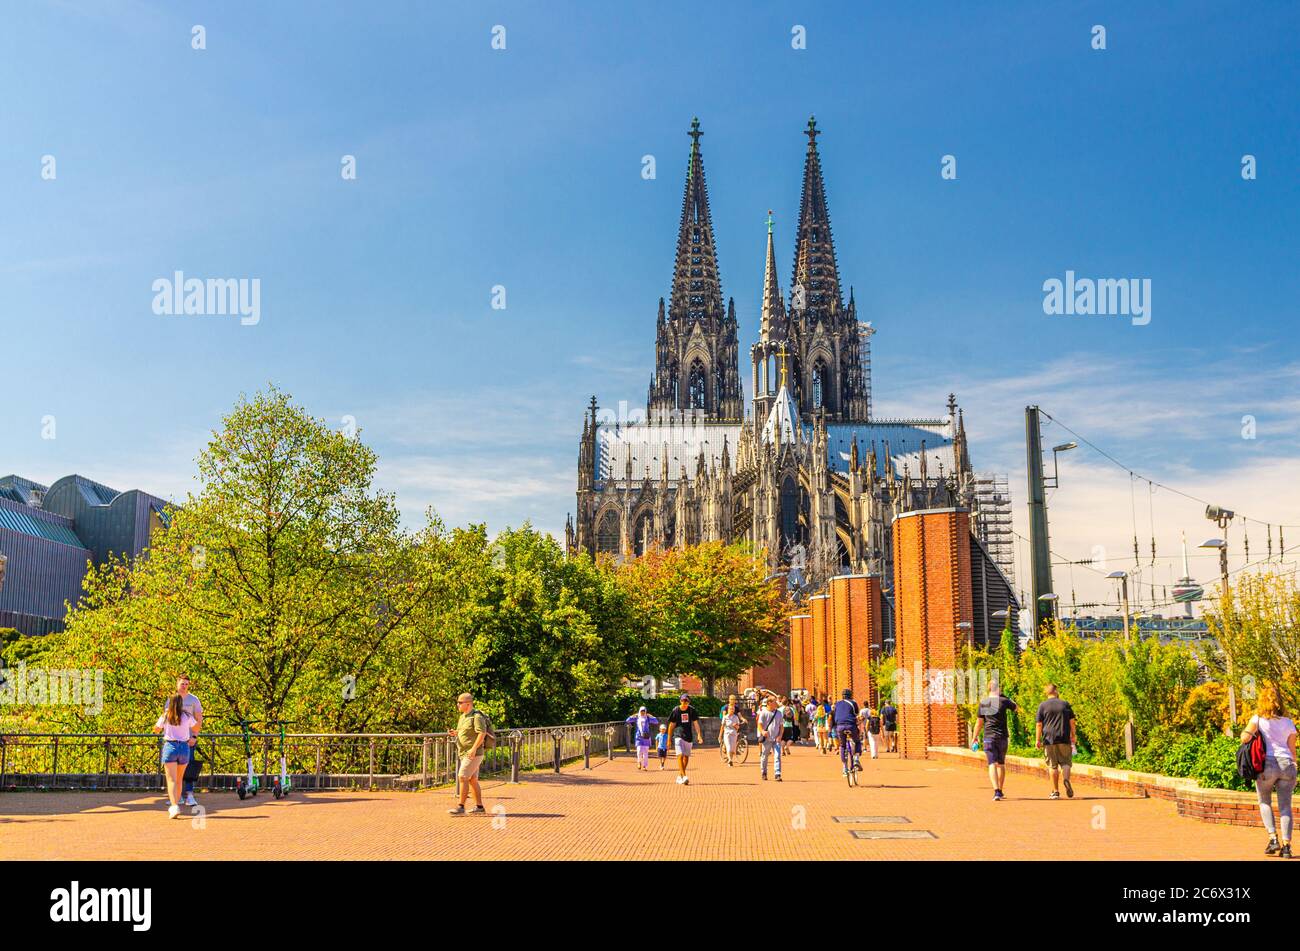 Köln, 23. August 2019: Touristen gehen auf dem Fußgängerplatz in der Nähe des Ludwig Museums mit Blick auf den Dom Römisch-Katholische Kirche St. Peter gotischen Stil Gebäude Stockfoto